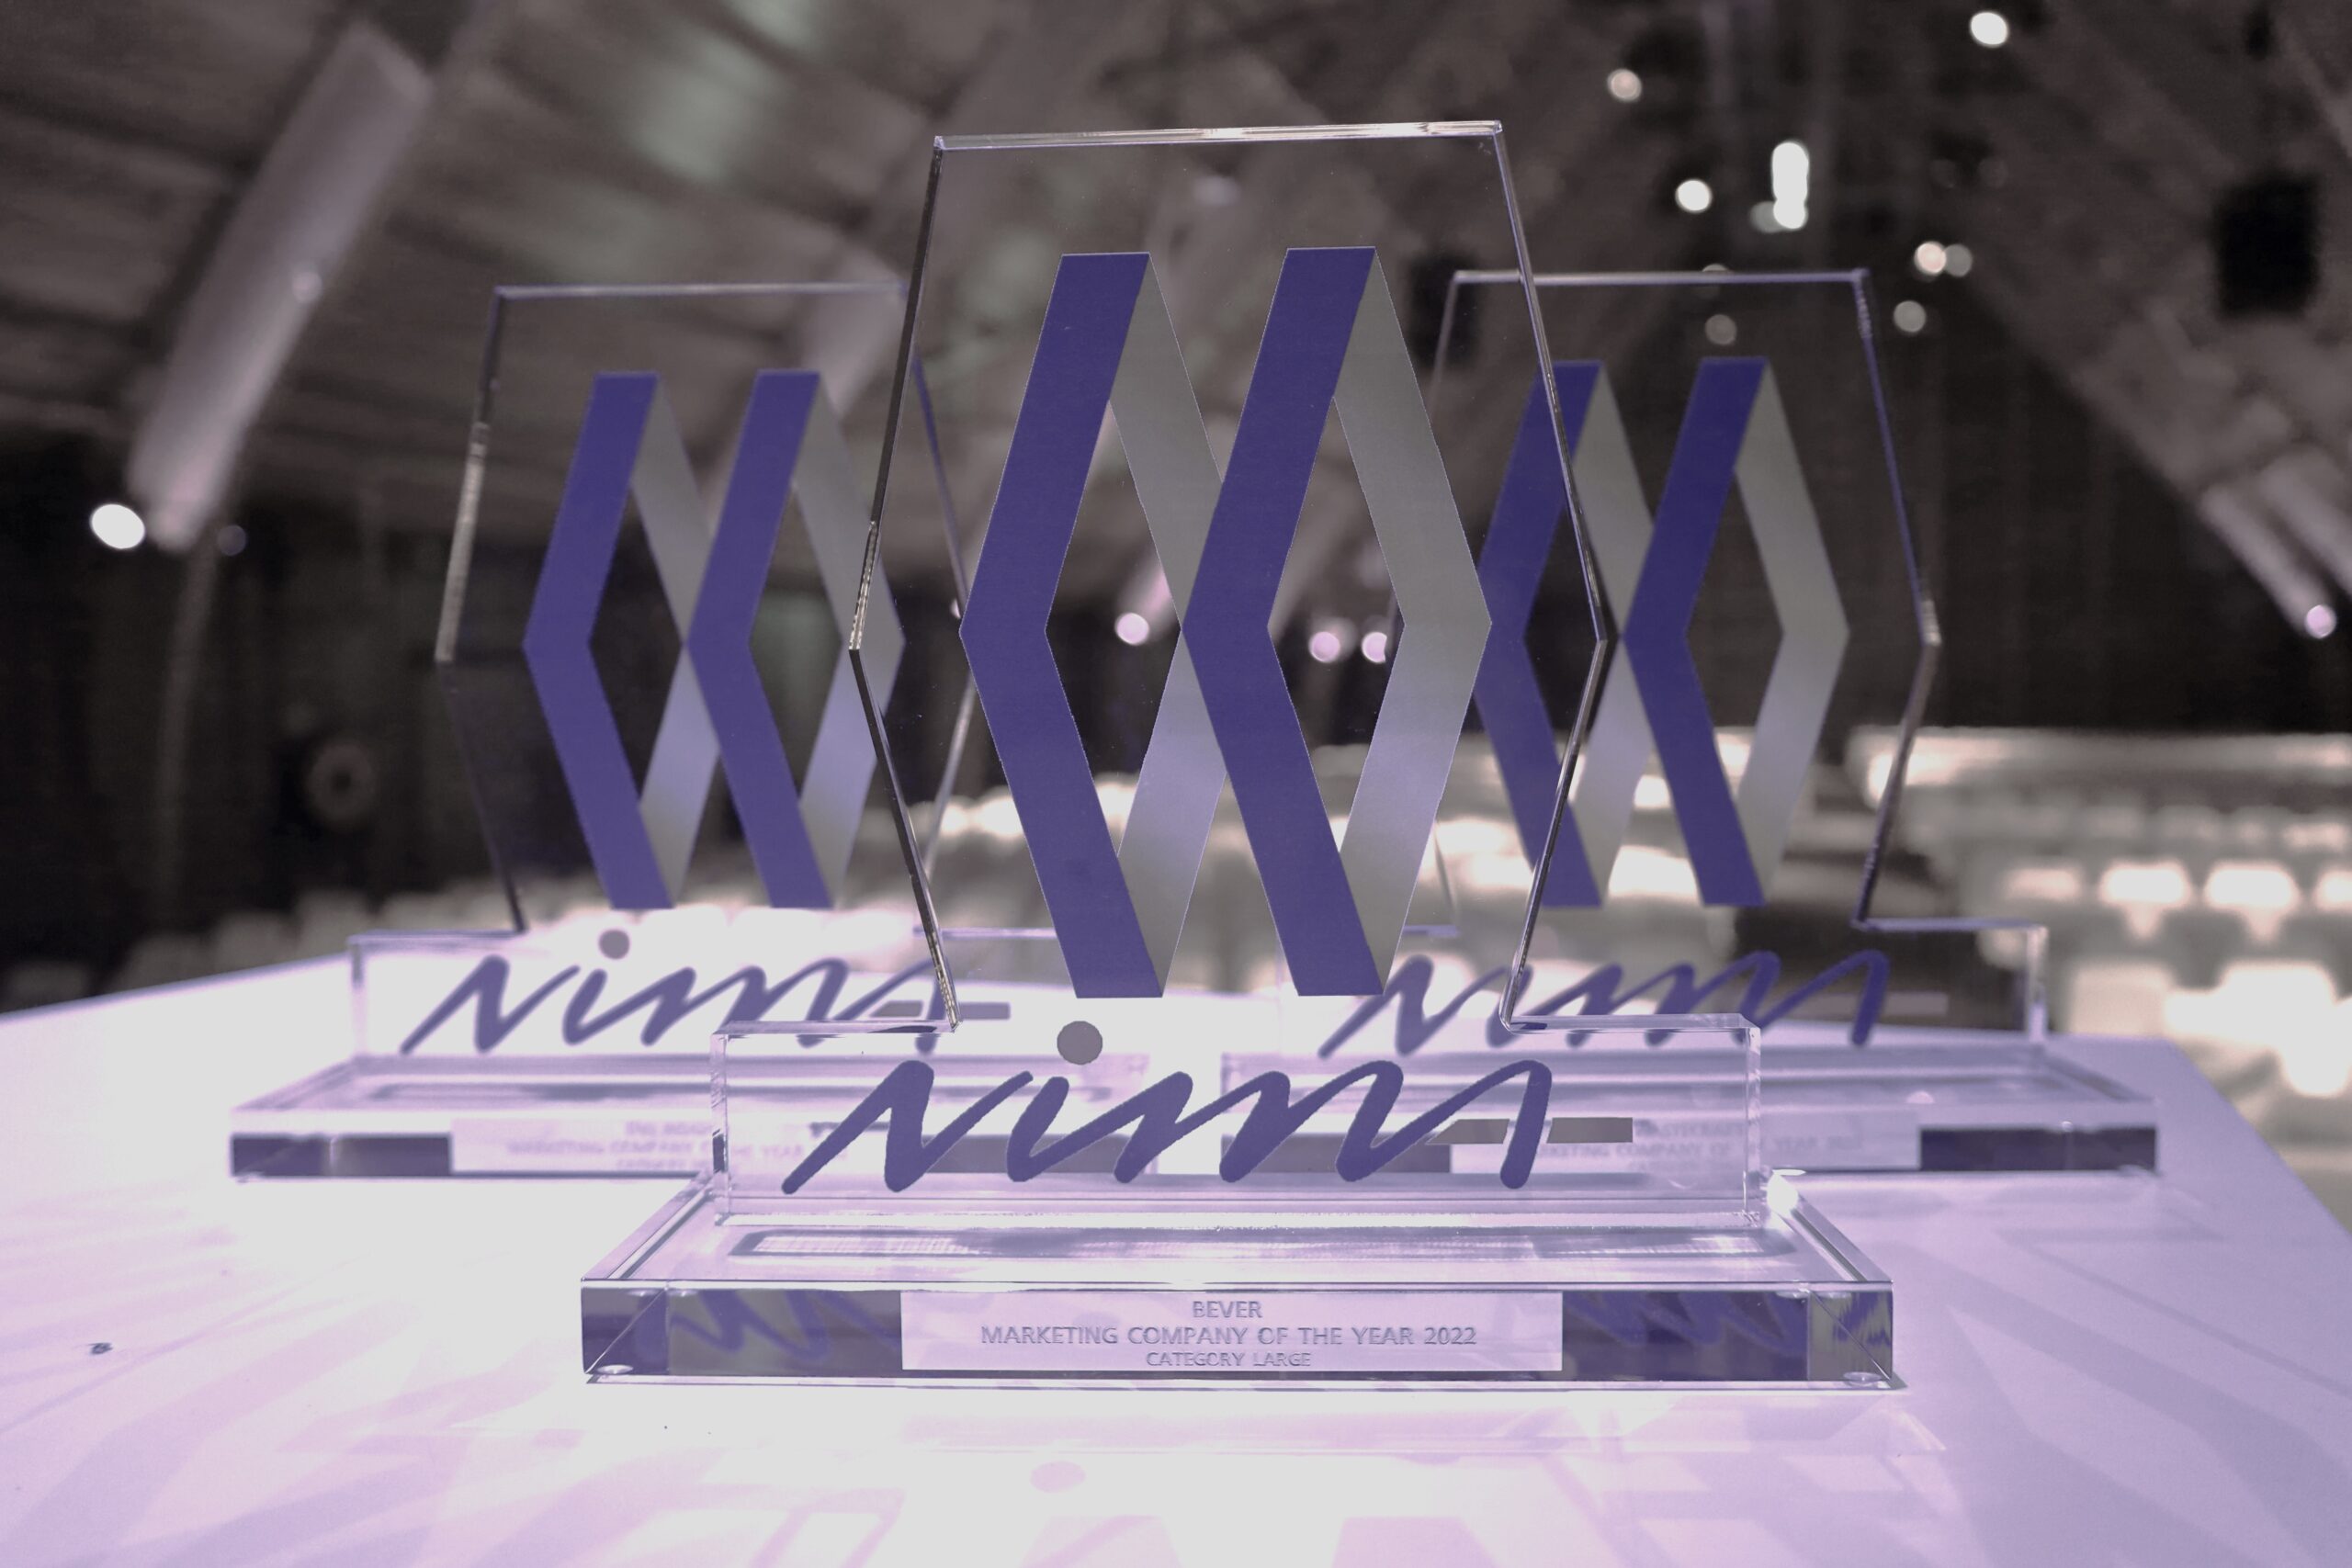 Winnaars NIMA Marketingprijzen 2022: Bever, DVJ Insights en WasteCraft – Category Large